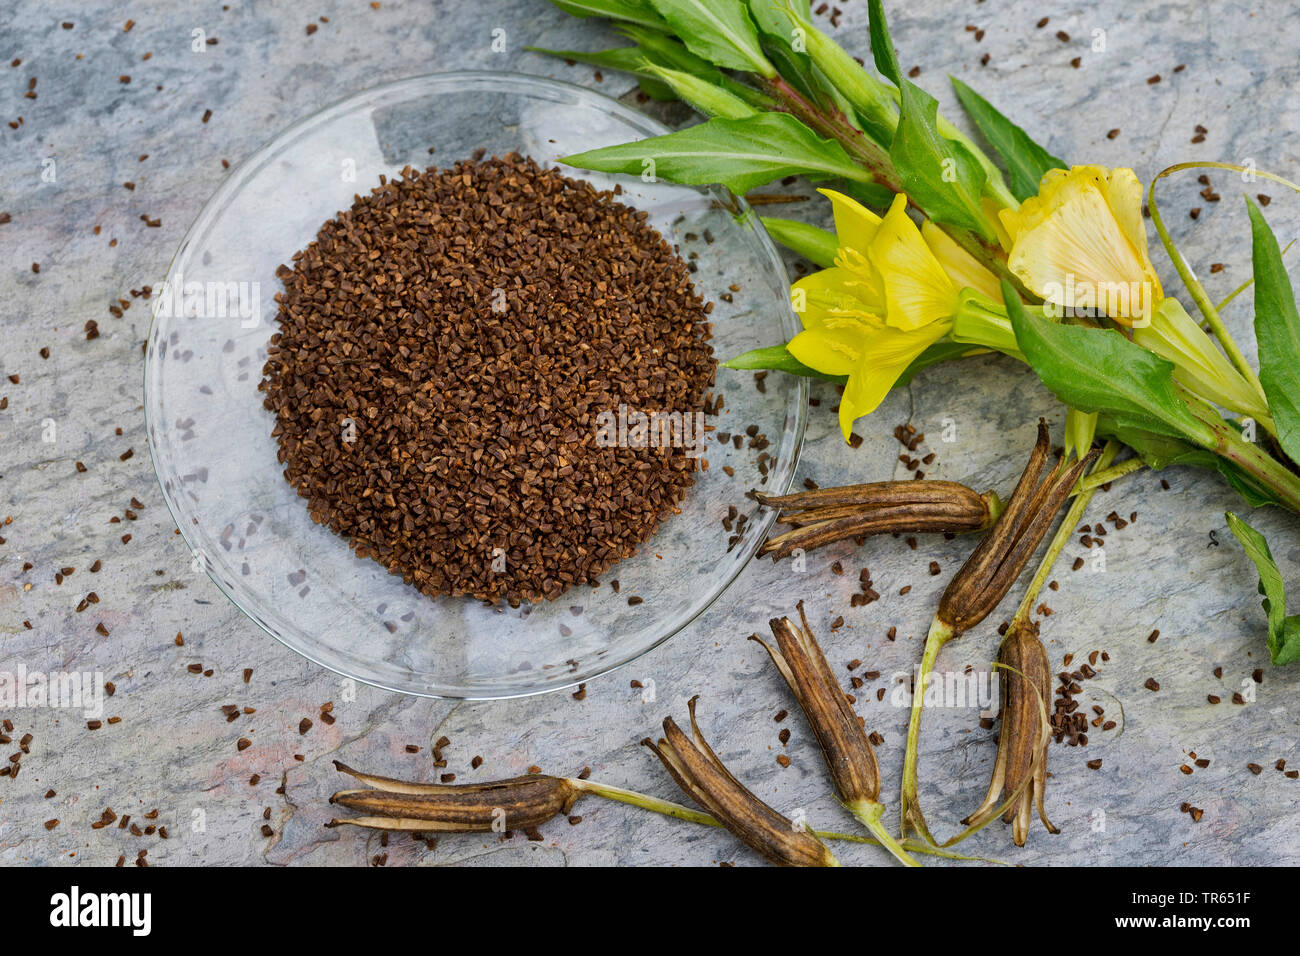 Gemeinsame Nachtkerze (Oenothera biennis) Samen in eine Schüssel, Produktion einer Nachtkerzenöl, Deutschland Stockfoto